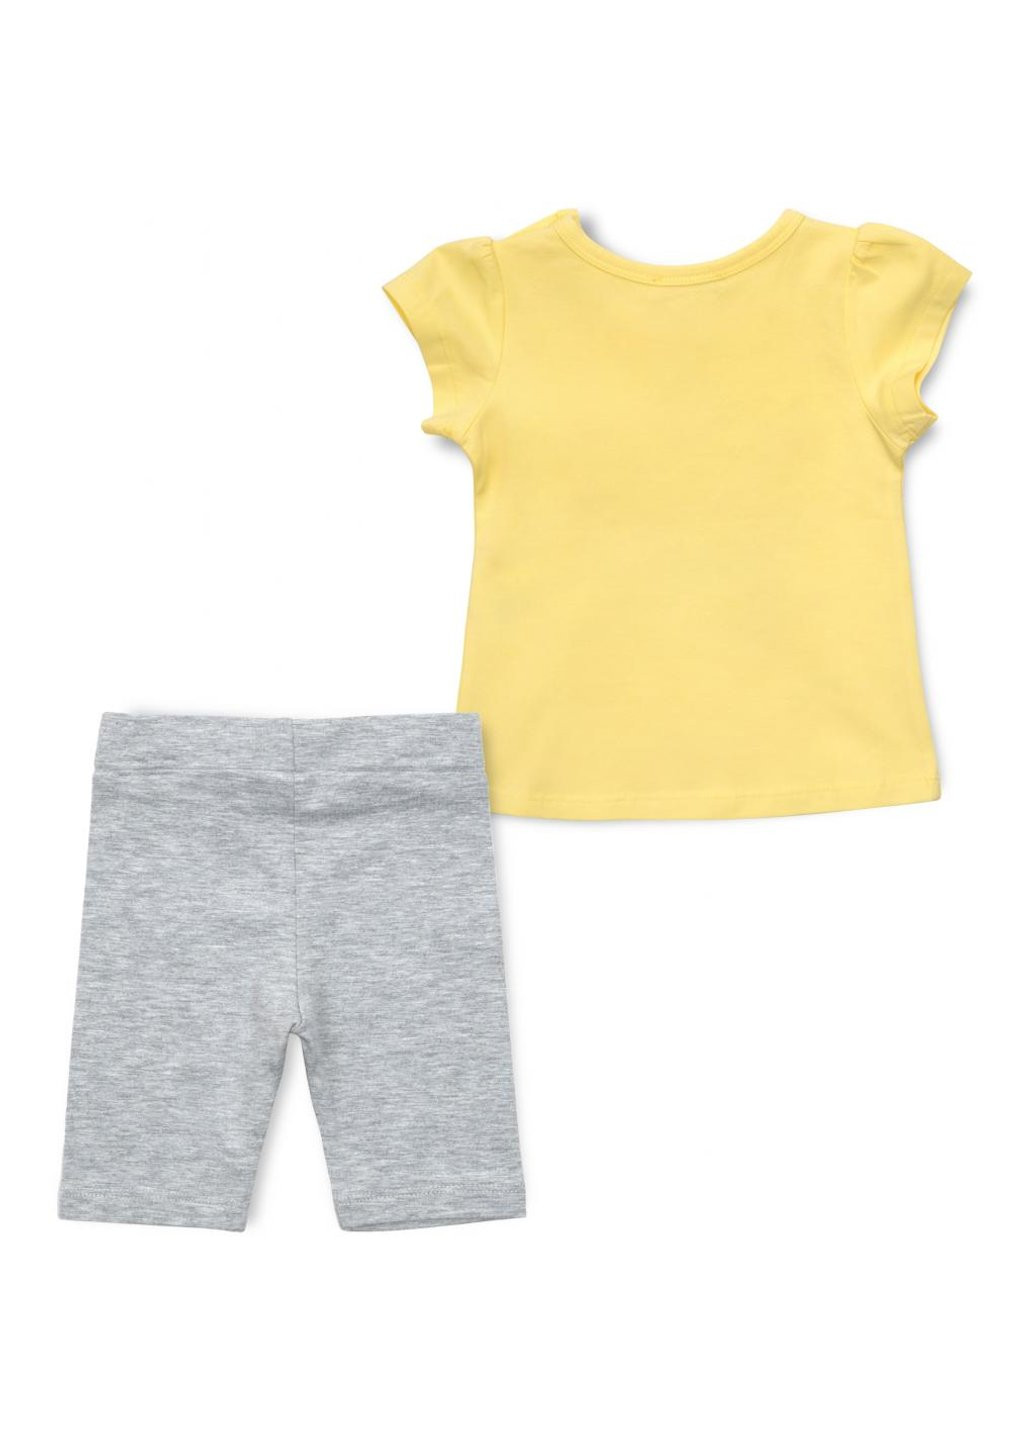 Комбинированный демисезонный набор детской одежды с бабочкой (13500-80g-yellow) Breeze